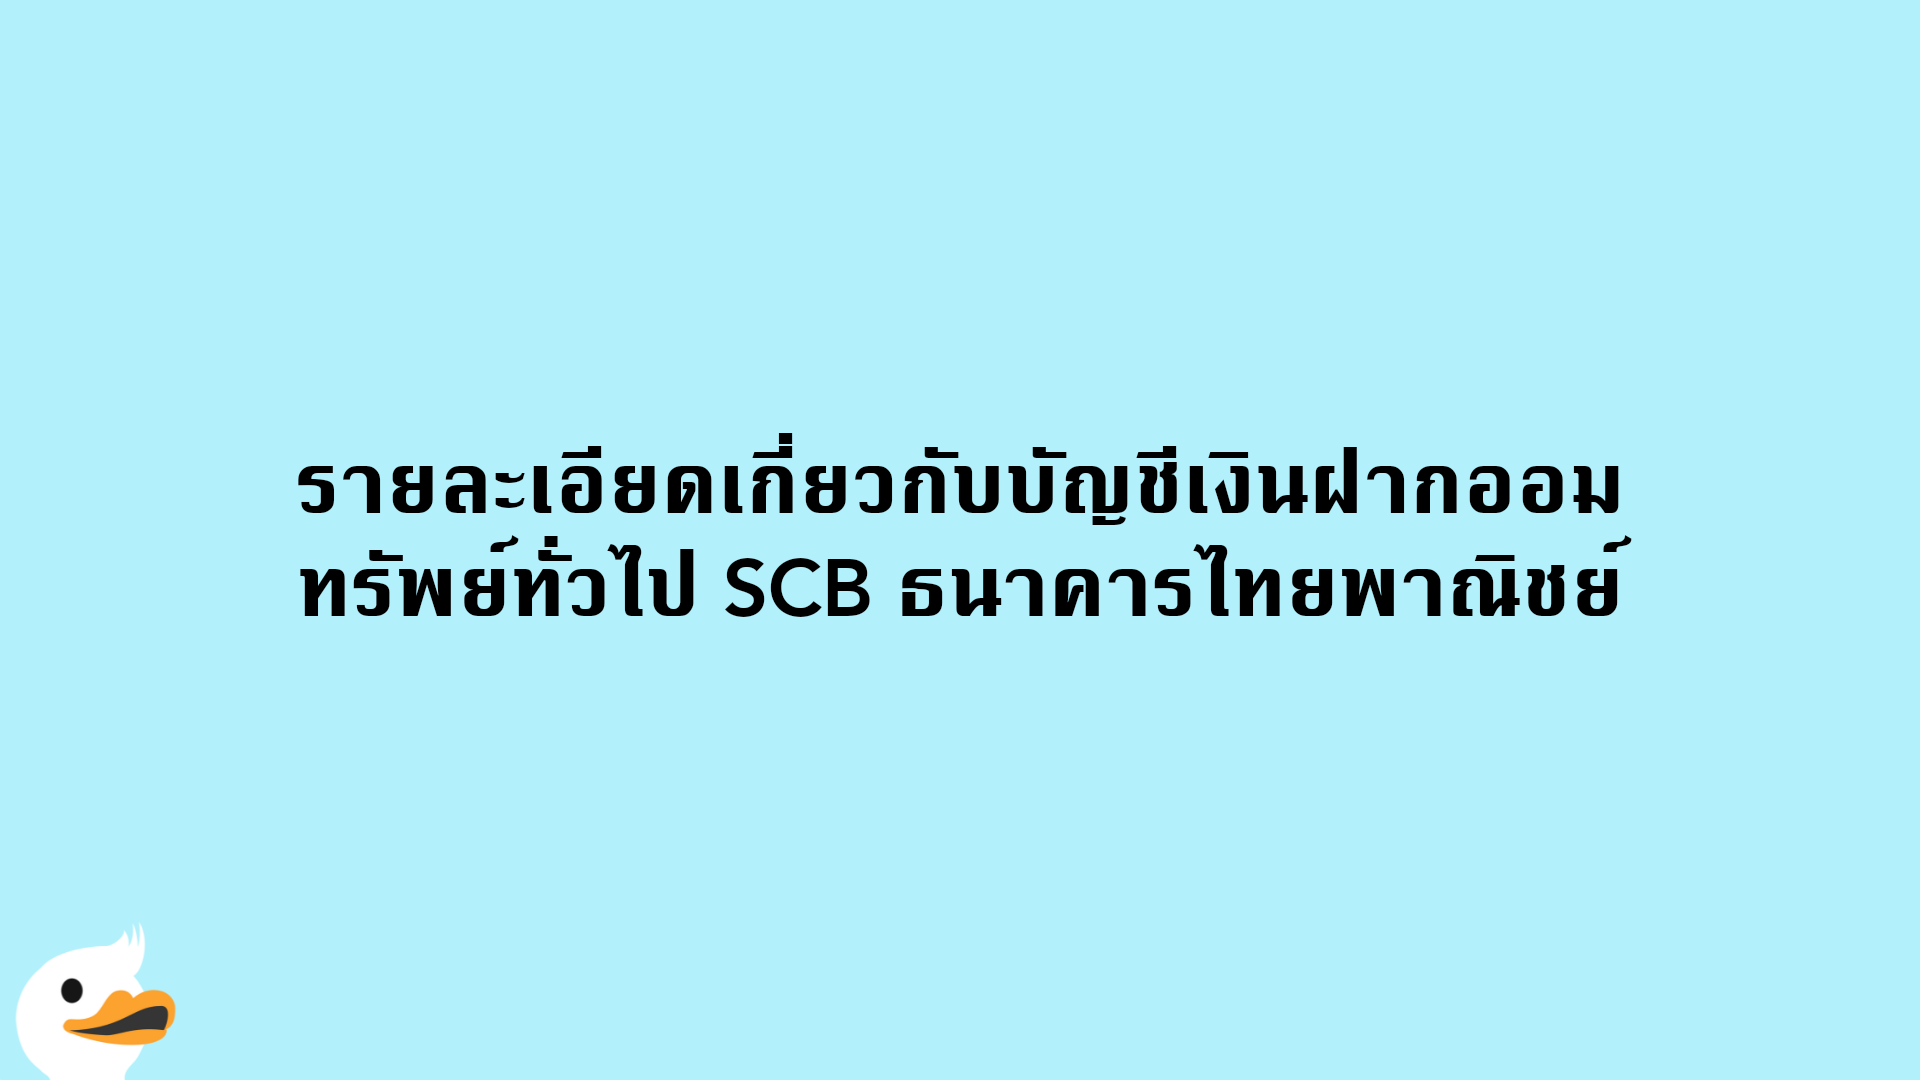 รายละเอียดเกี่ยวกับบัญชีเงินฝากออมทรัพย์ทั่วไป SCB ธนาคารไทยพาณิชย์